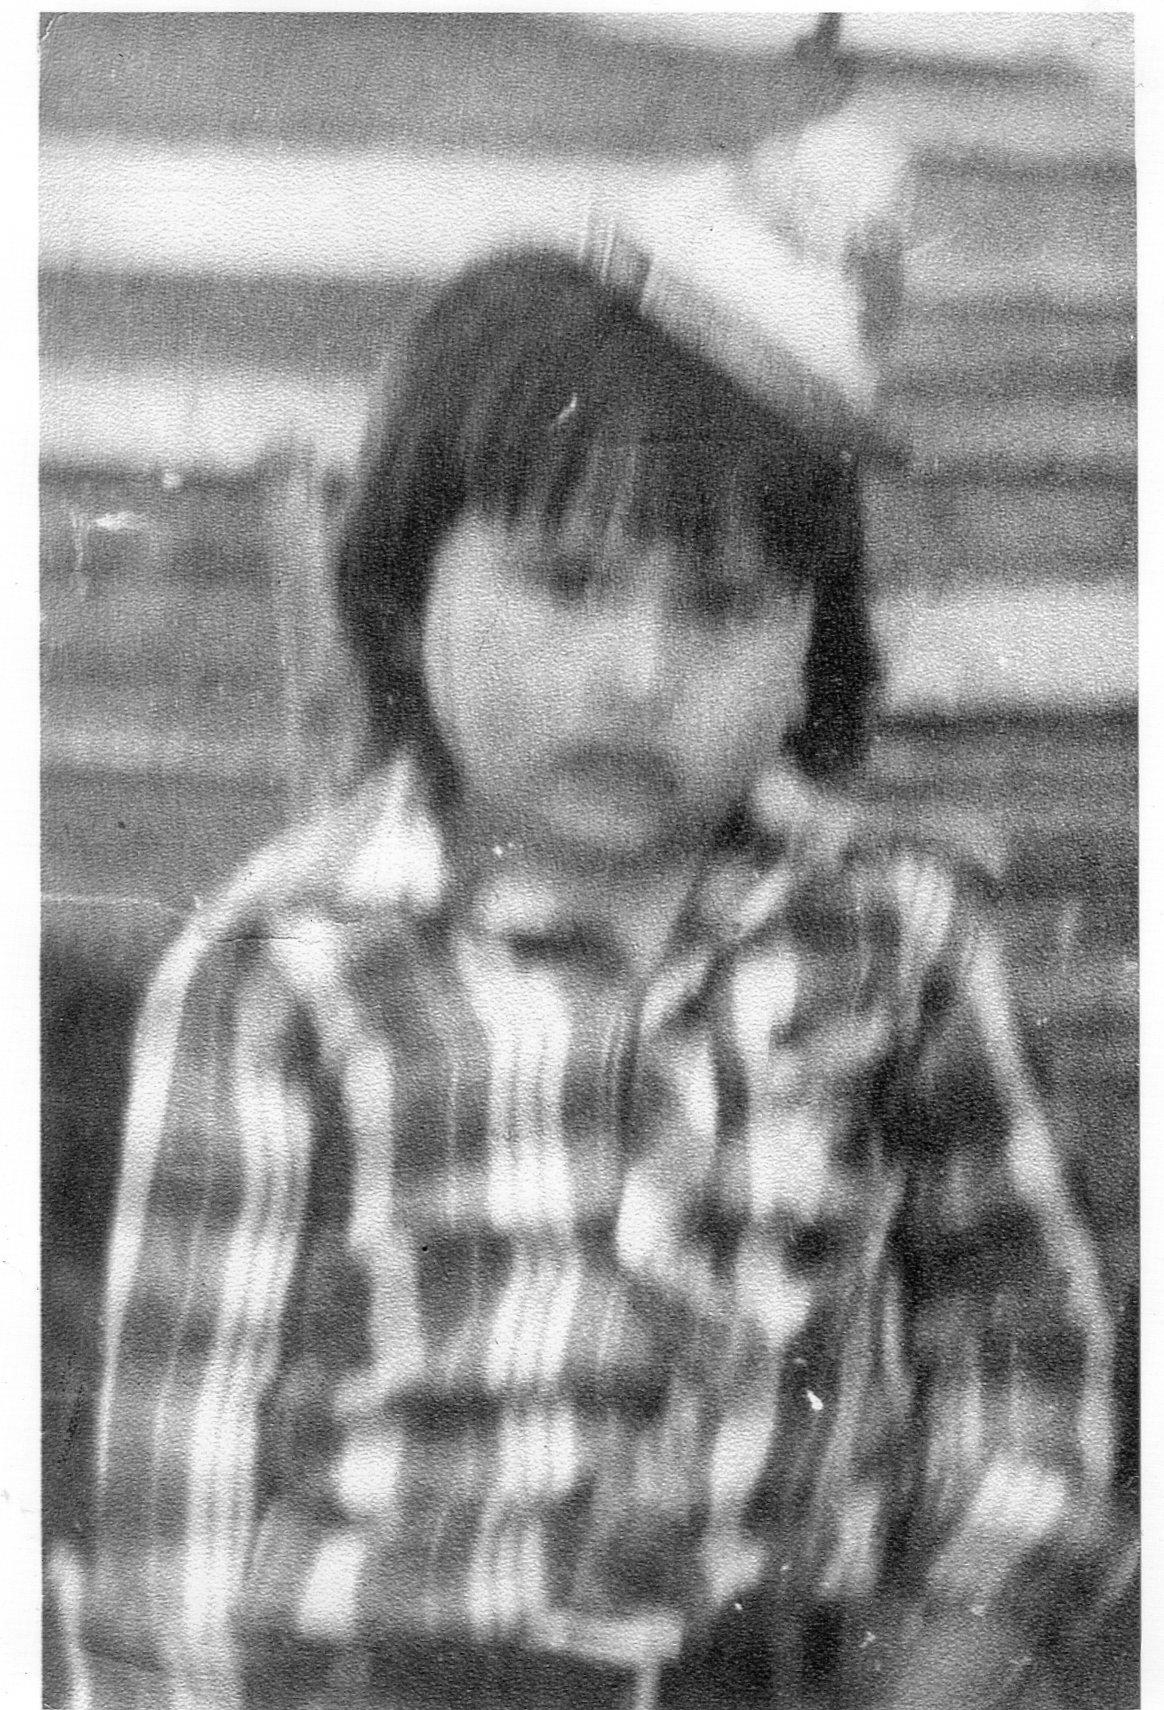 Juan Eduardo Barrios tenía 3 años cuando fue asesinado por 
Montoneros el 6-12-77. Esta es una de las dos fotos que hay de él.